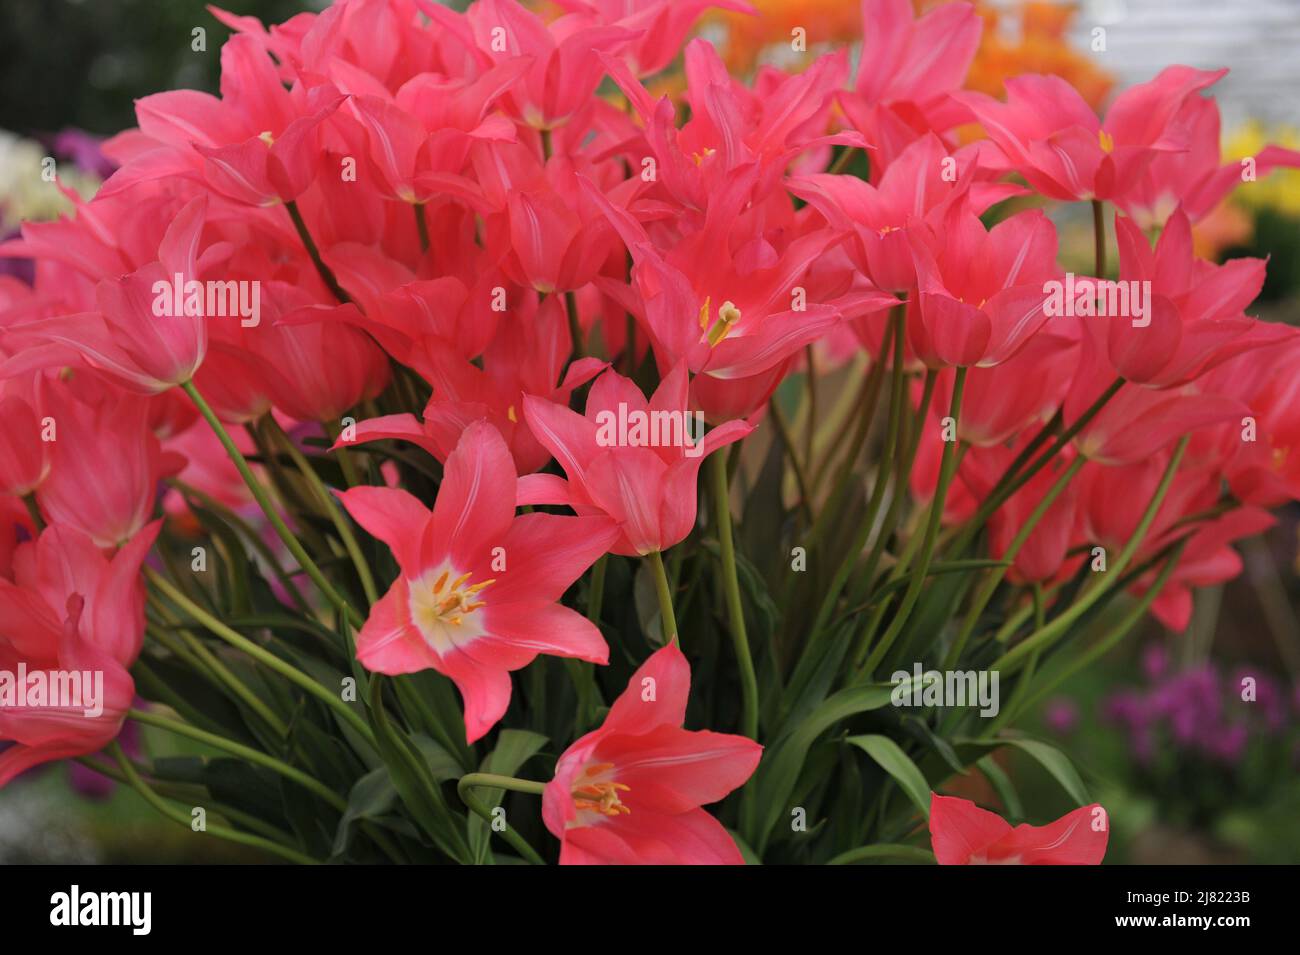 Un bouquet de tulipes roses à fleurs de nénuphars (Tulipa) Mariette fleurissent lors d'une exposition en mai Banque D'Images